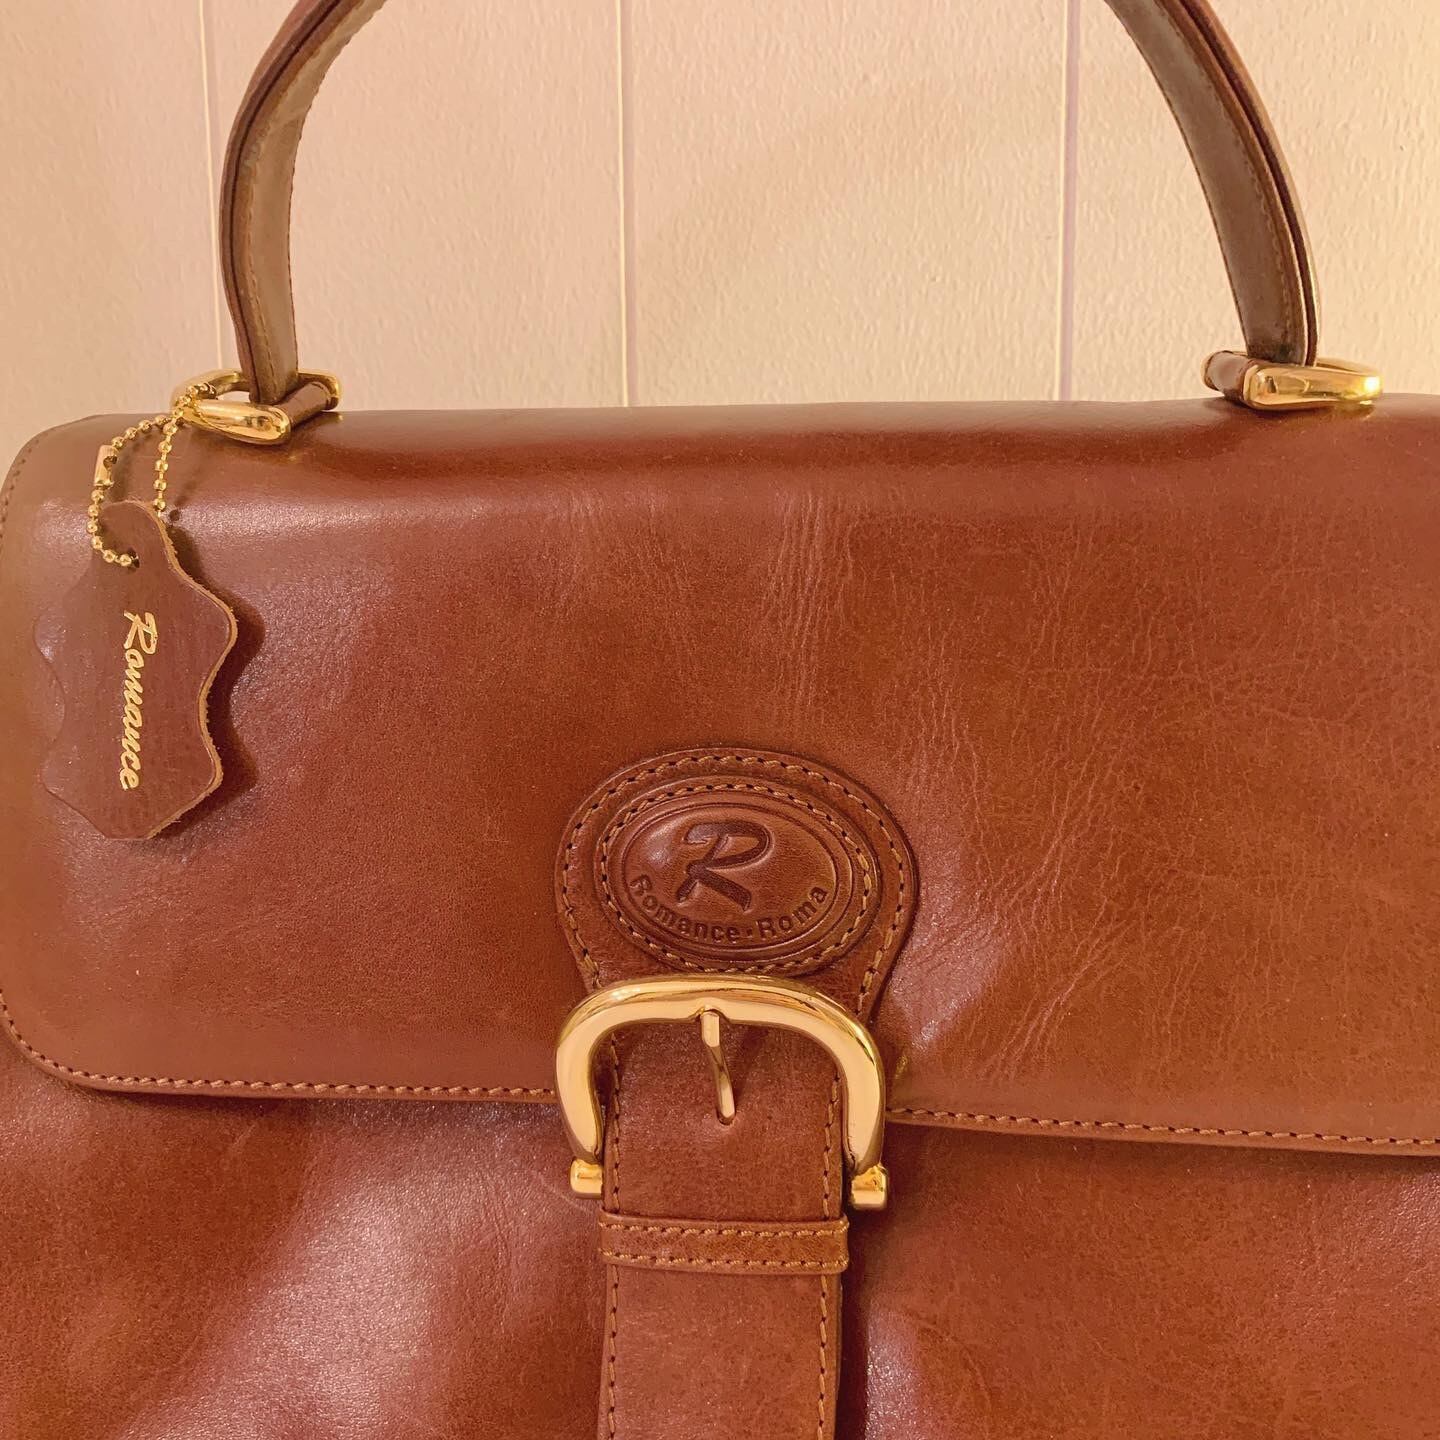 big belt brown leather hand bag